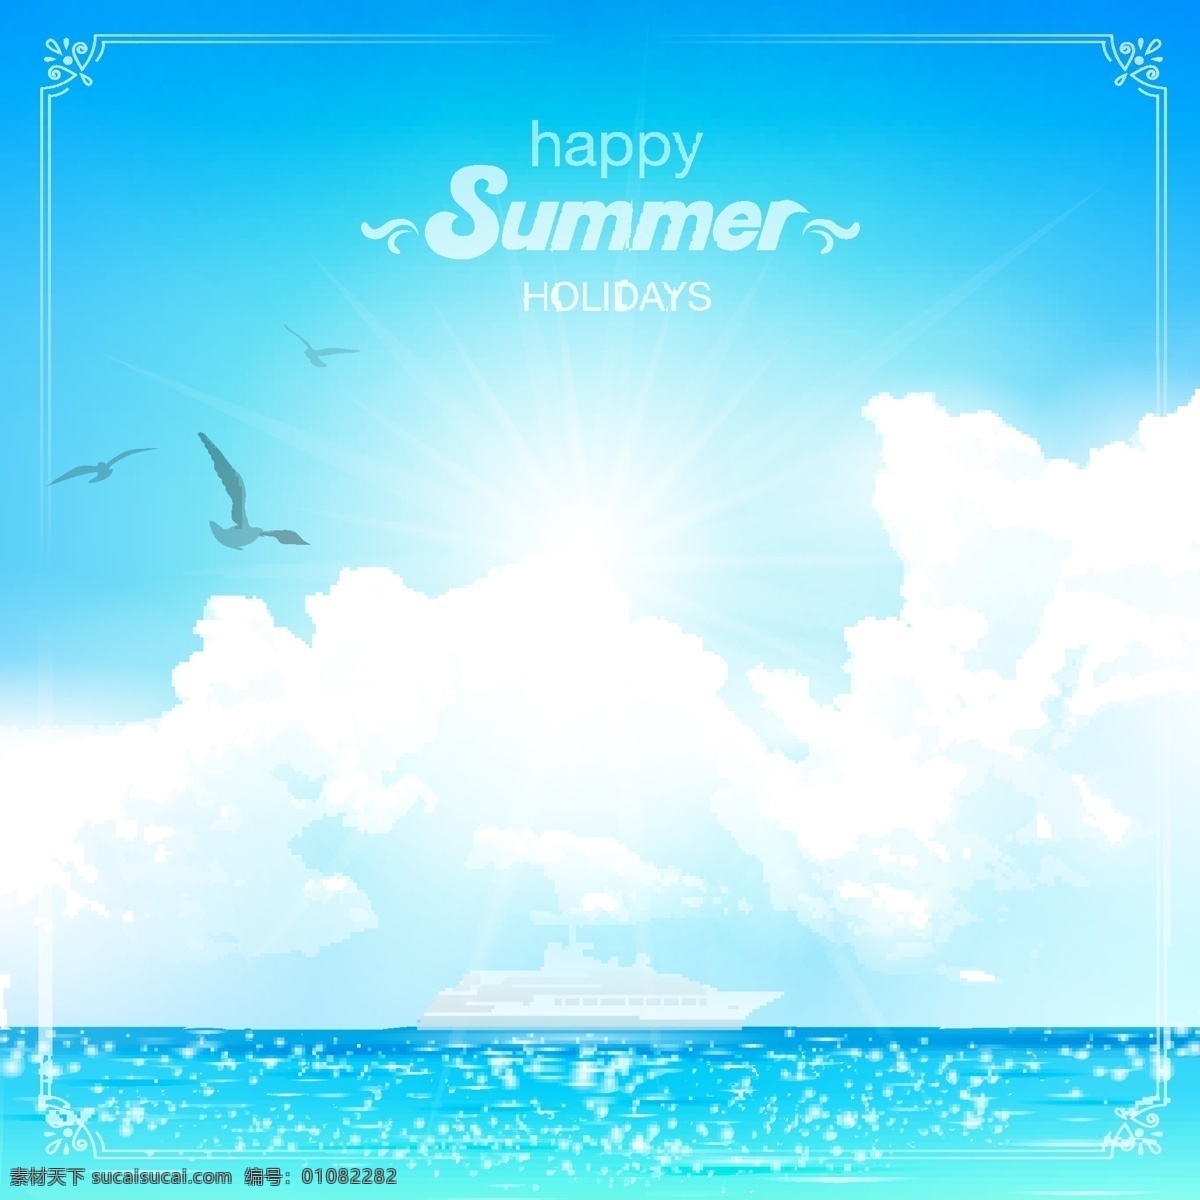 度假 海边 背景 夏日 元素 矢量 蓝天 白云 海水 卡通 小清新 填充 插画 海报 广告 包装 印刷 夏天